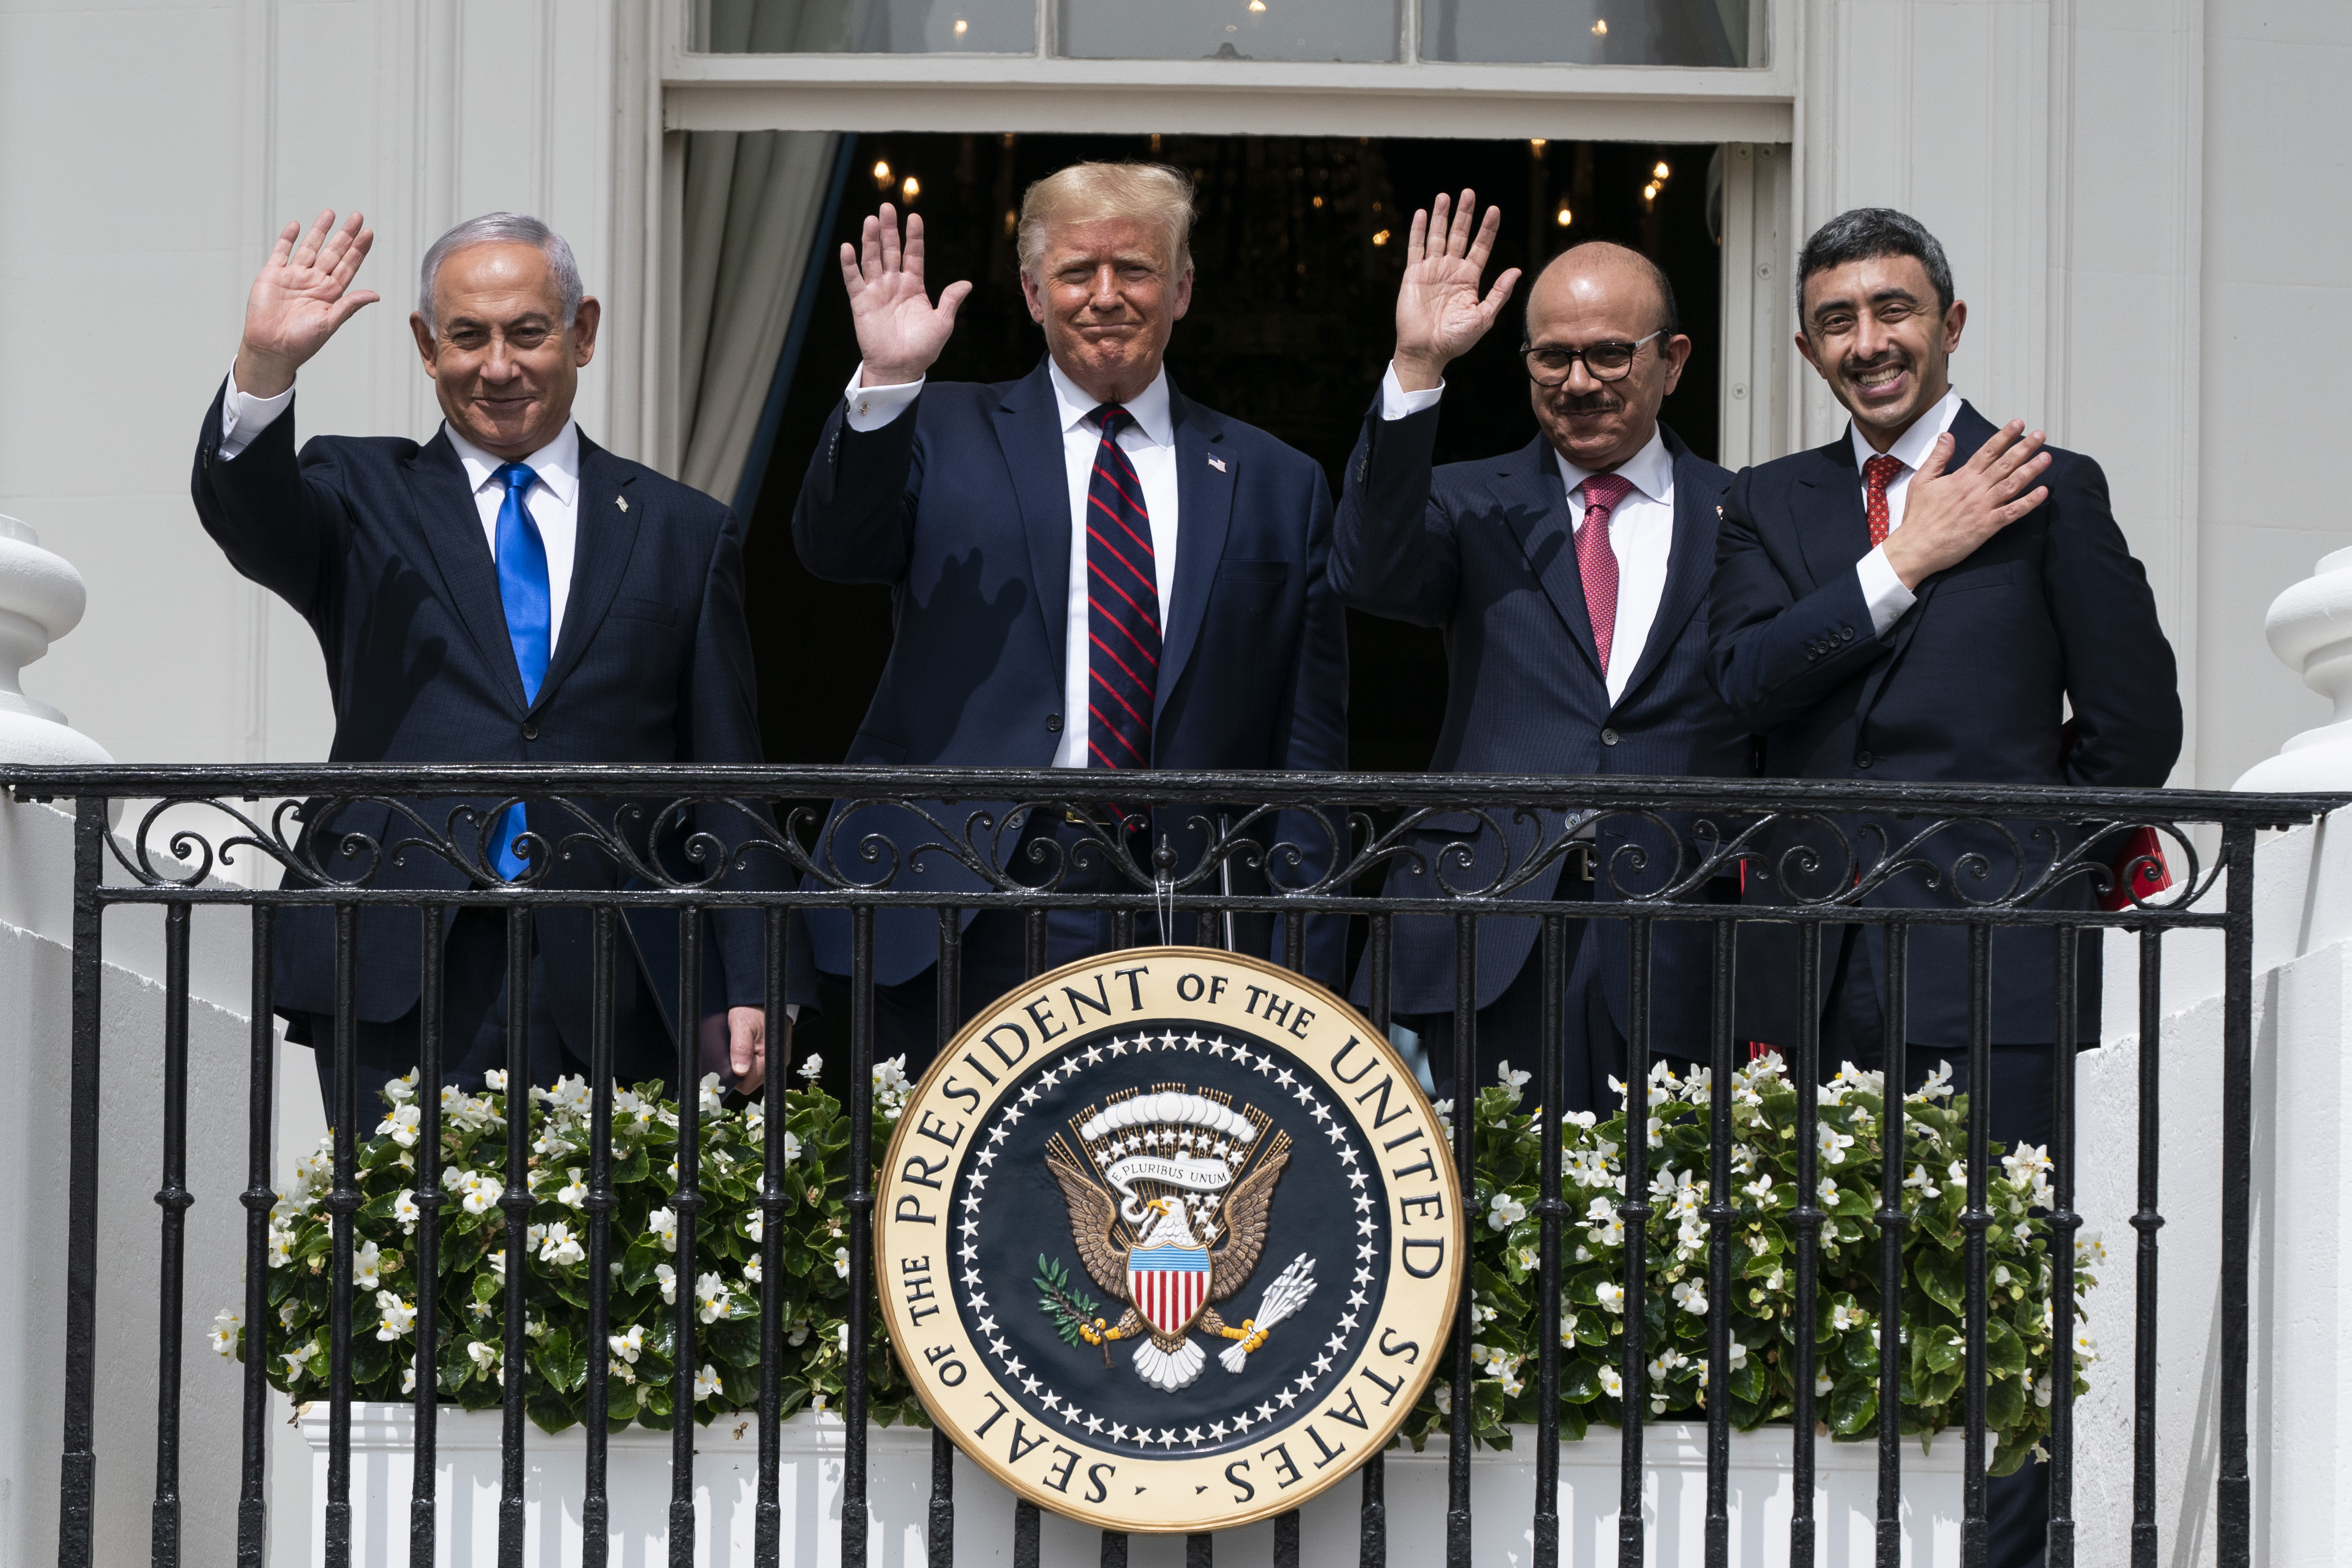  美國總統特朗普主持簽署儀式。巴勒斯坦總統阿巴斯同日表示，如果美國和以色列不承認巴勒斯坦人民的合法權利，中東地區不可能實現和平。 （美聯社）